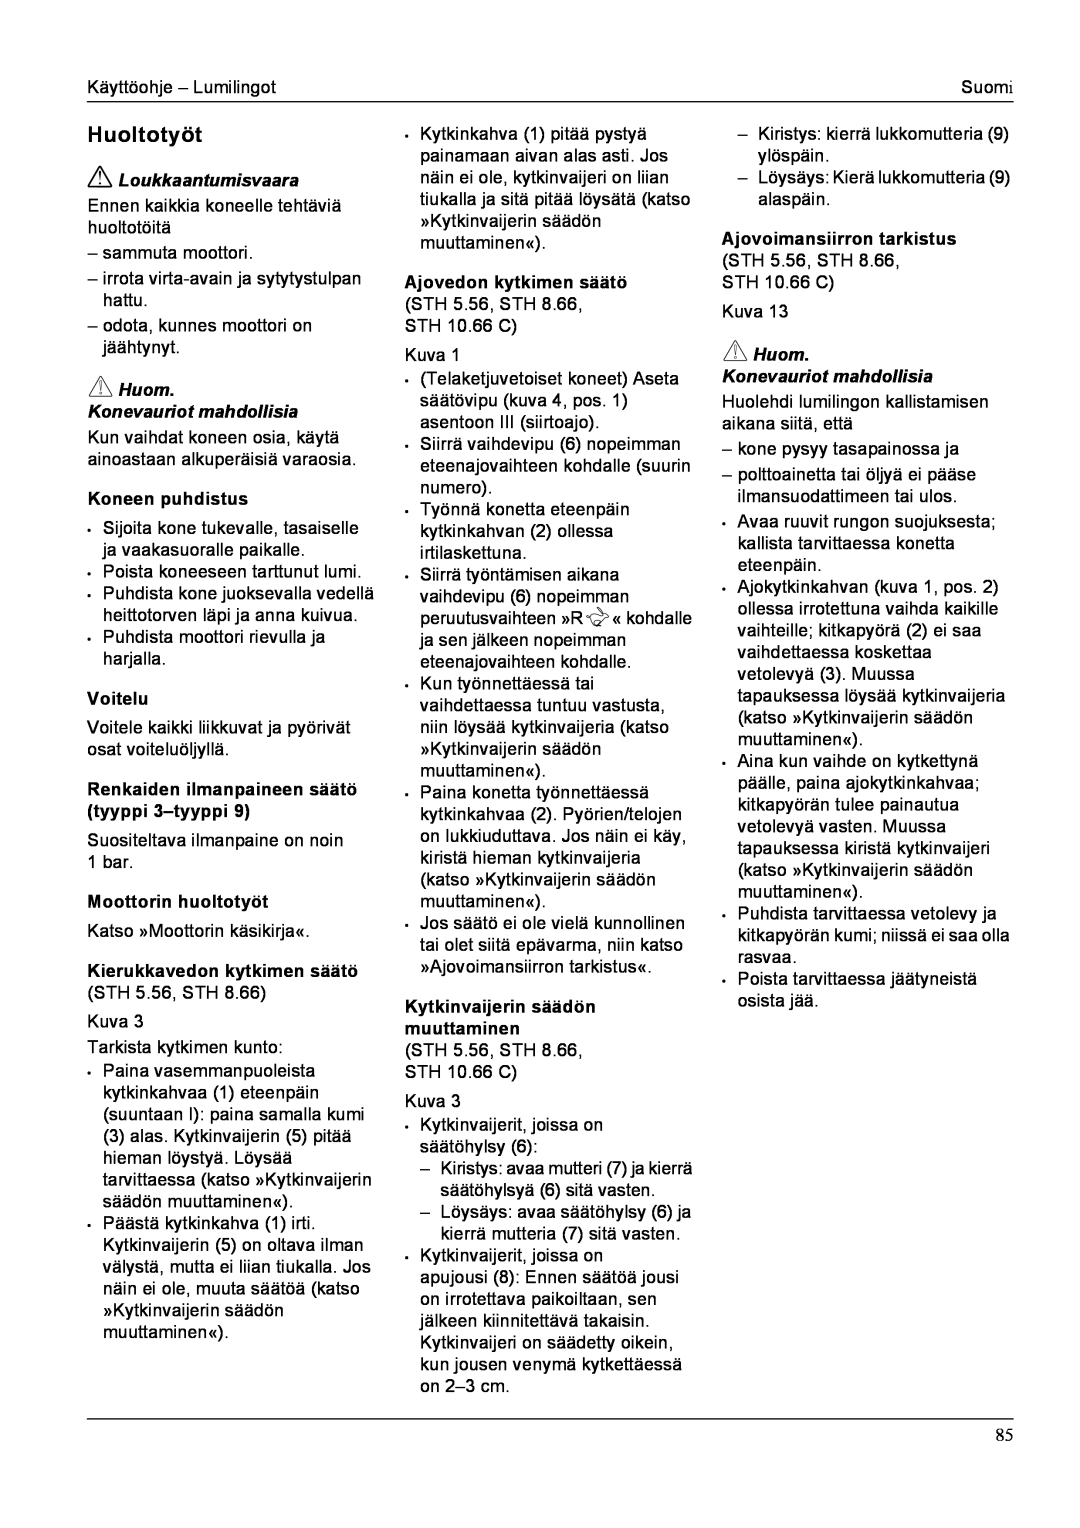 Karcher STH 5.56, STH 8.66 manual Huoltotyöt, Loukkaantumisvaara, Huom Konevauriot mahdollisia, Koneen puhdistus, Voitelu 